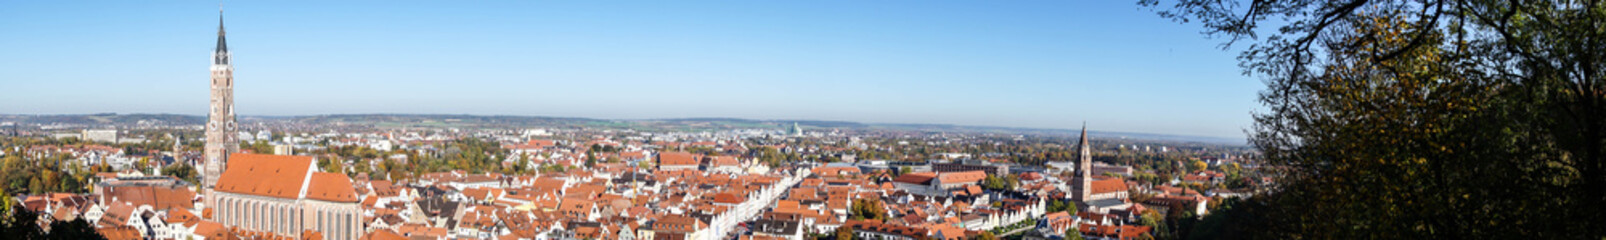 Panorama von Landshut in Bayern